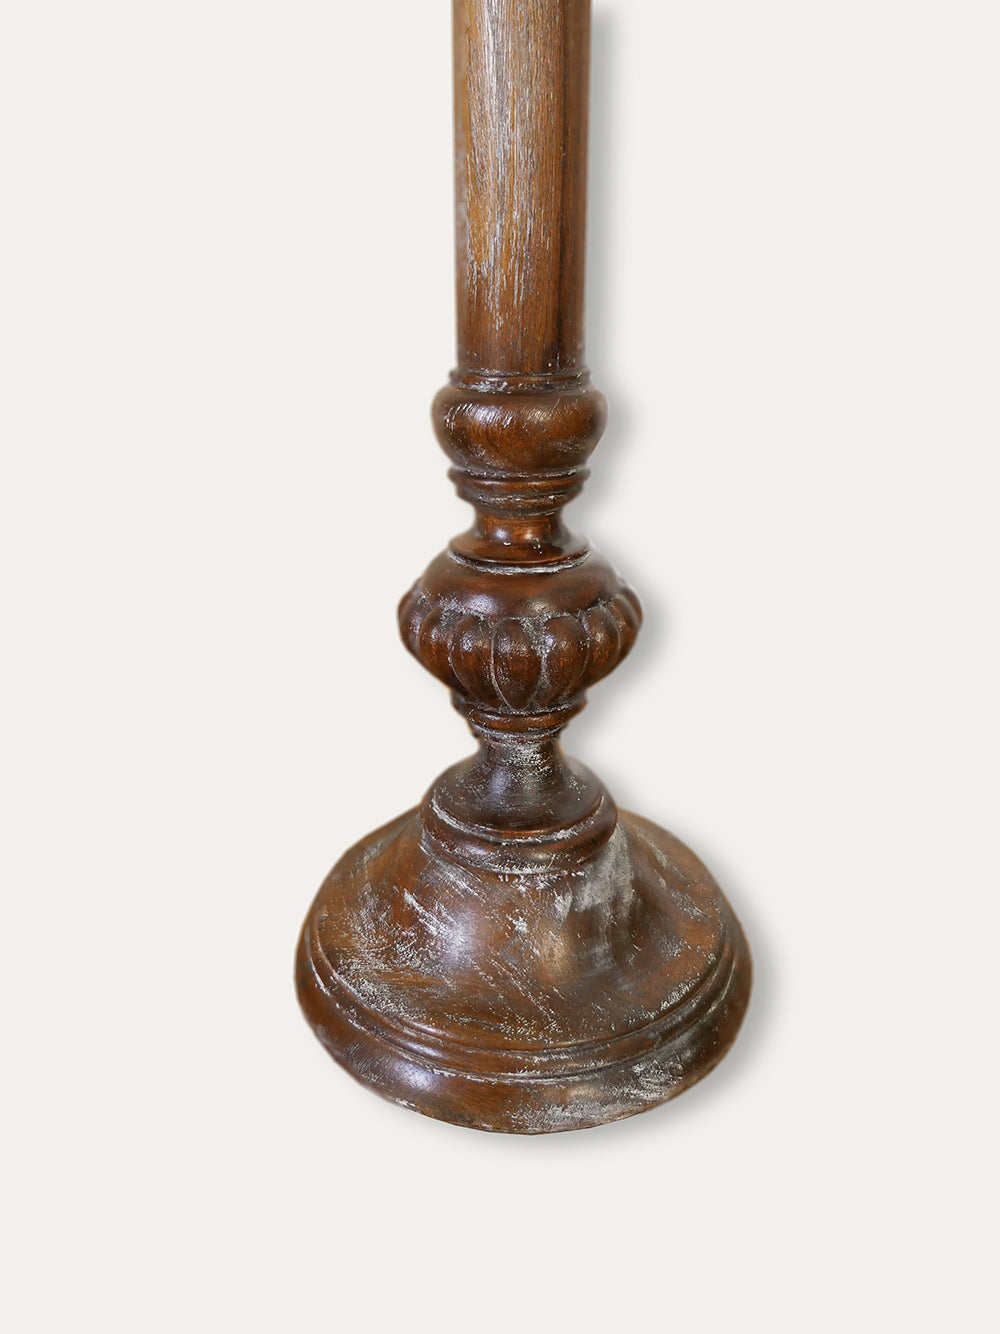 Colonial - Handmade Floor Lamp - kirschon